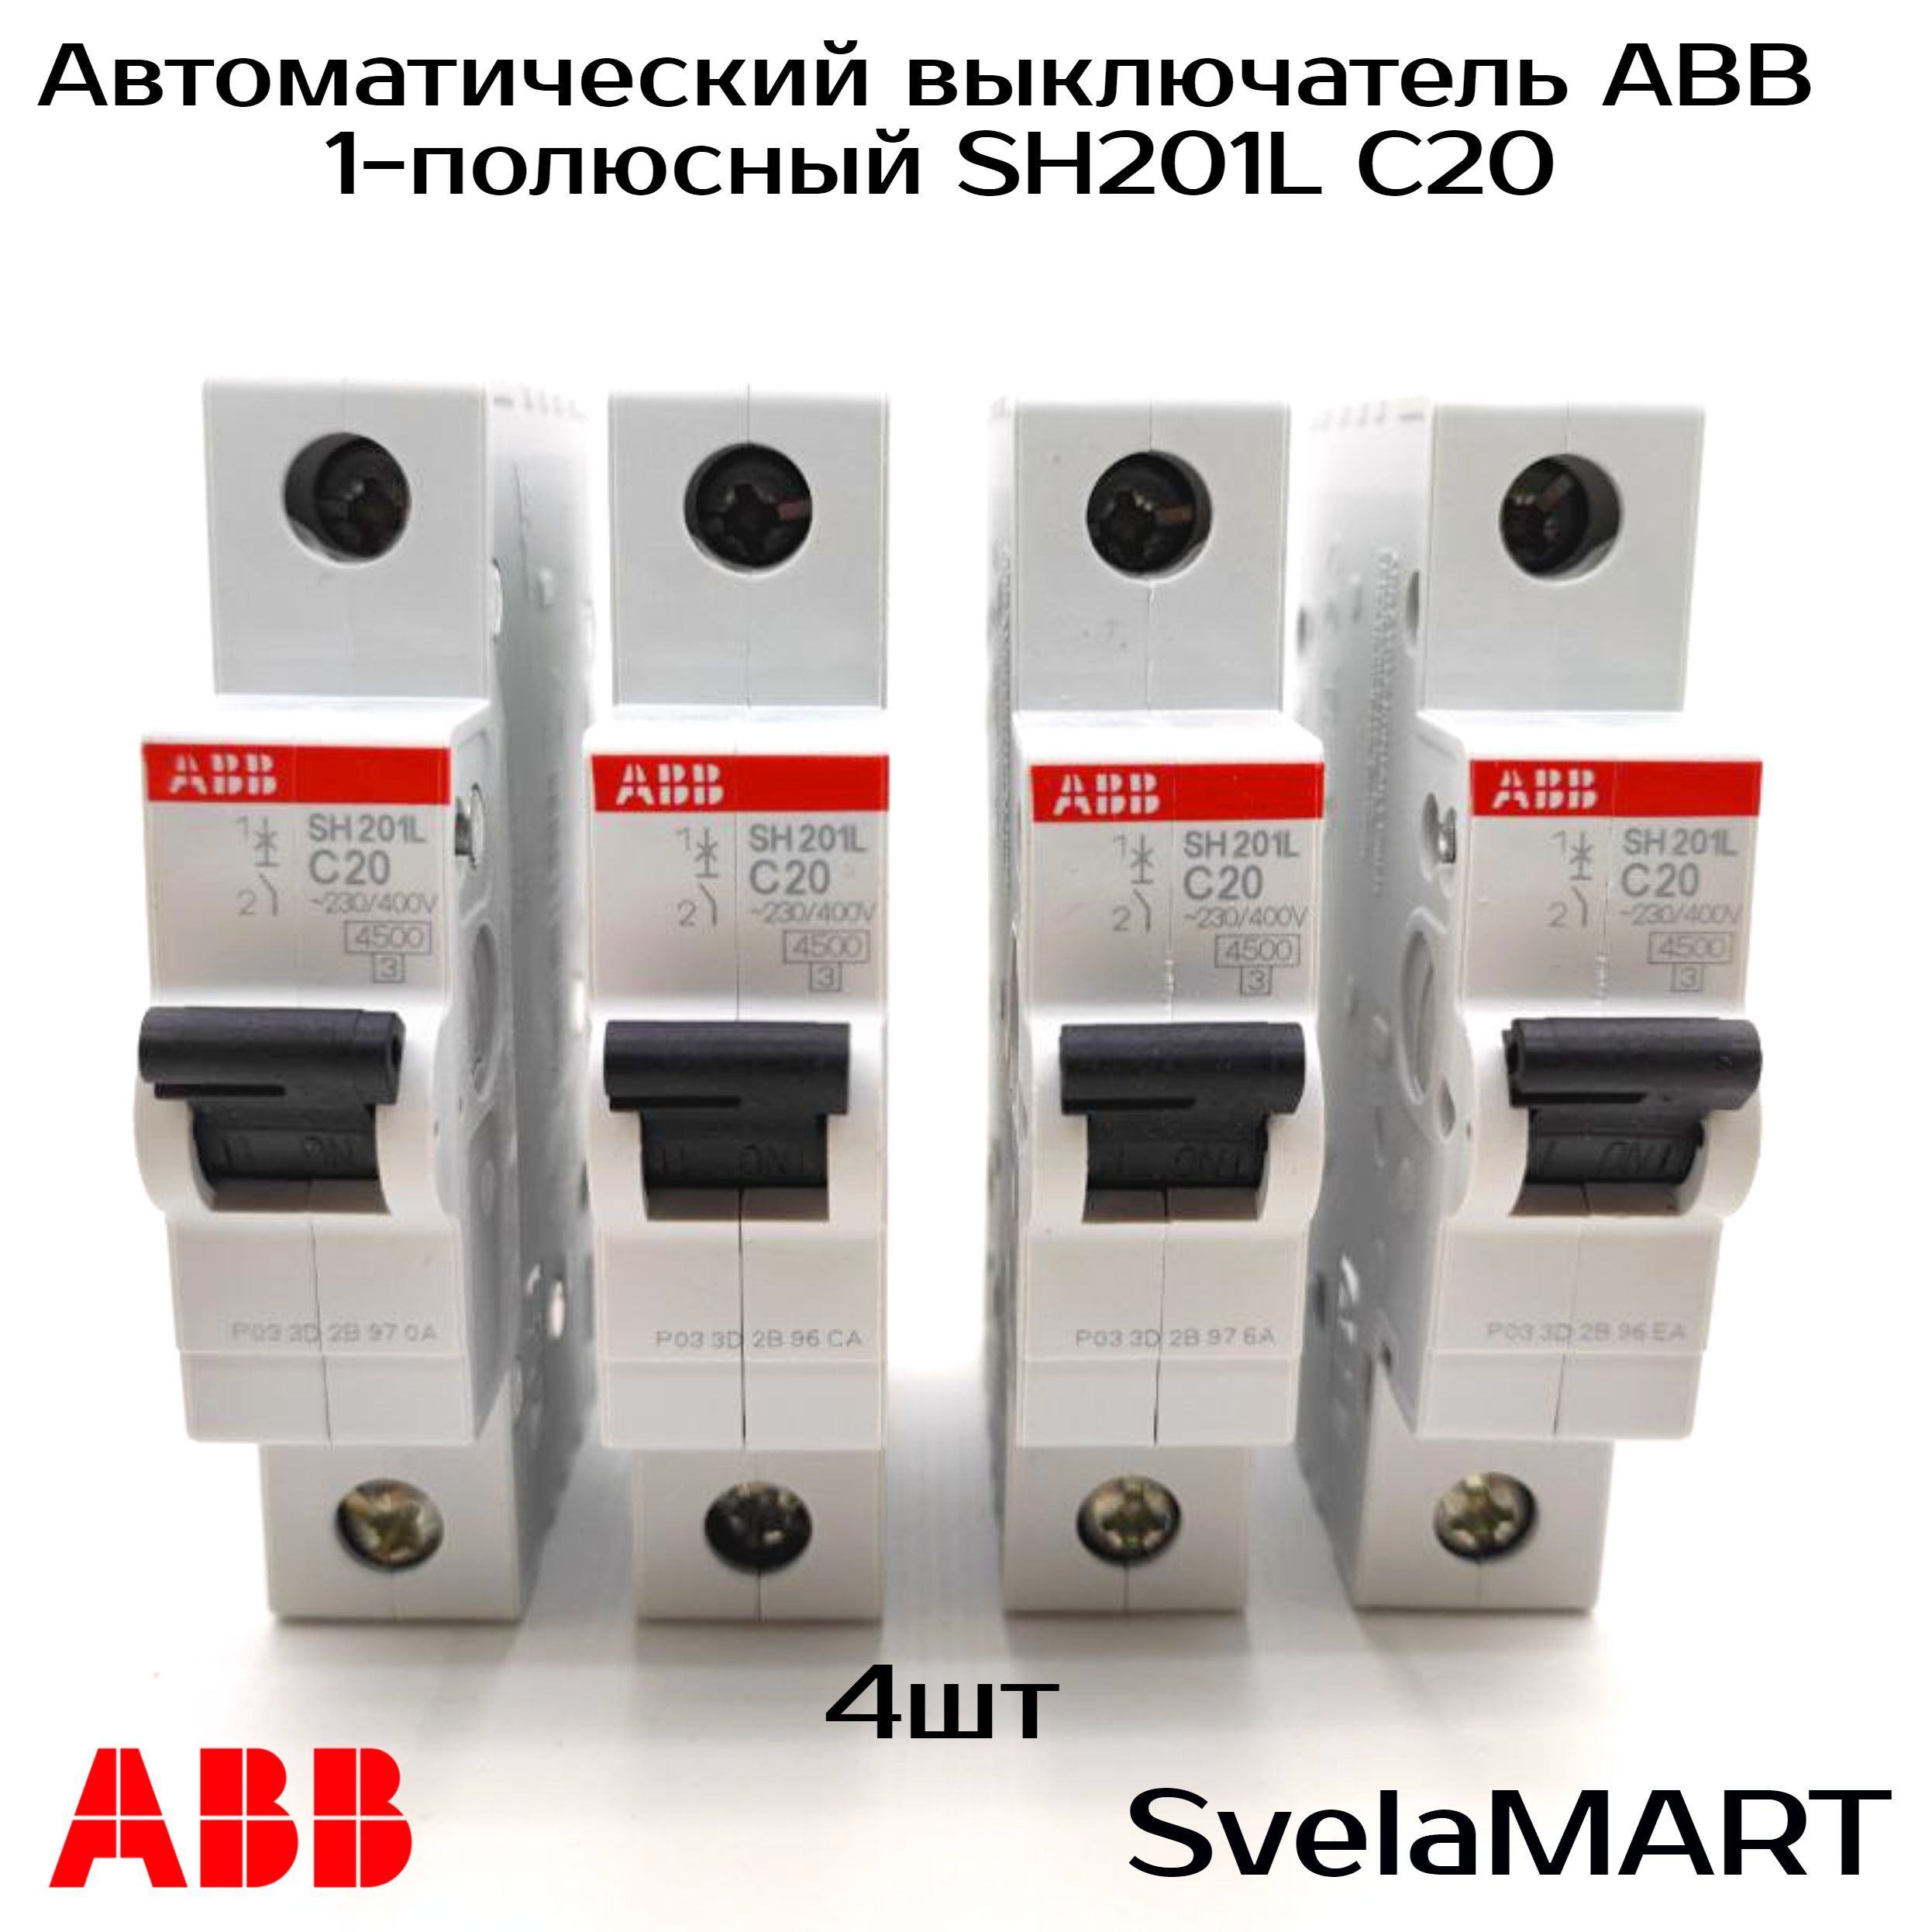 Однополюсные автоматические выключатели abb